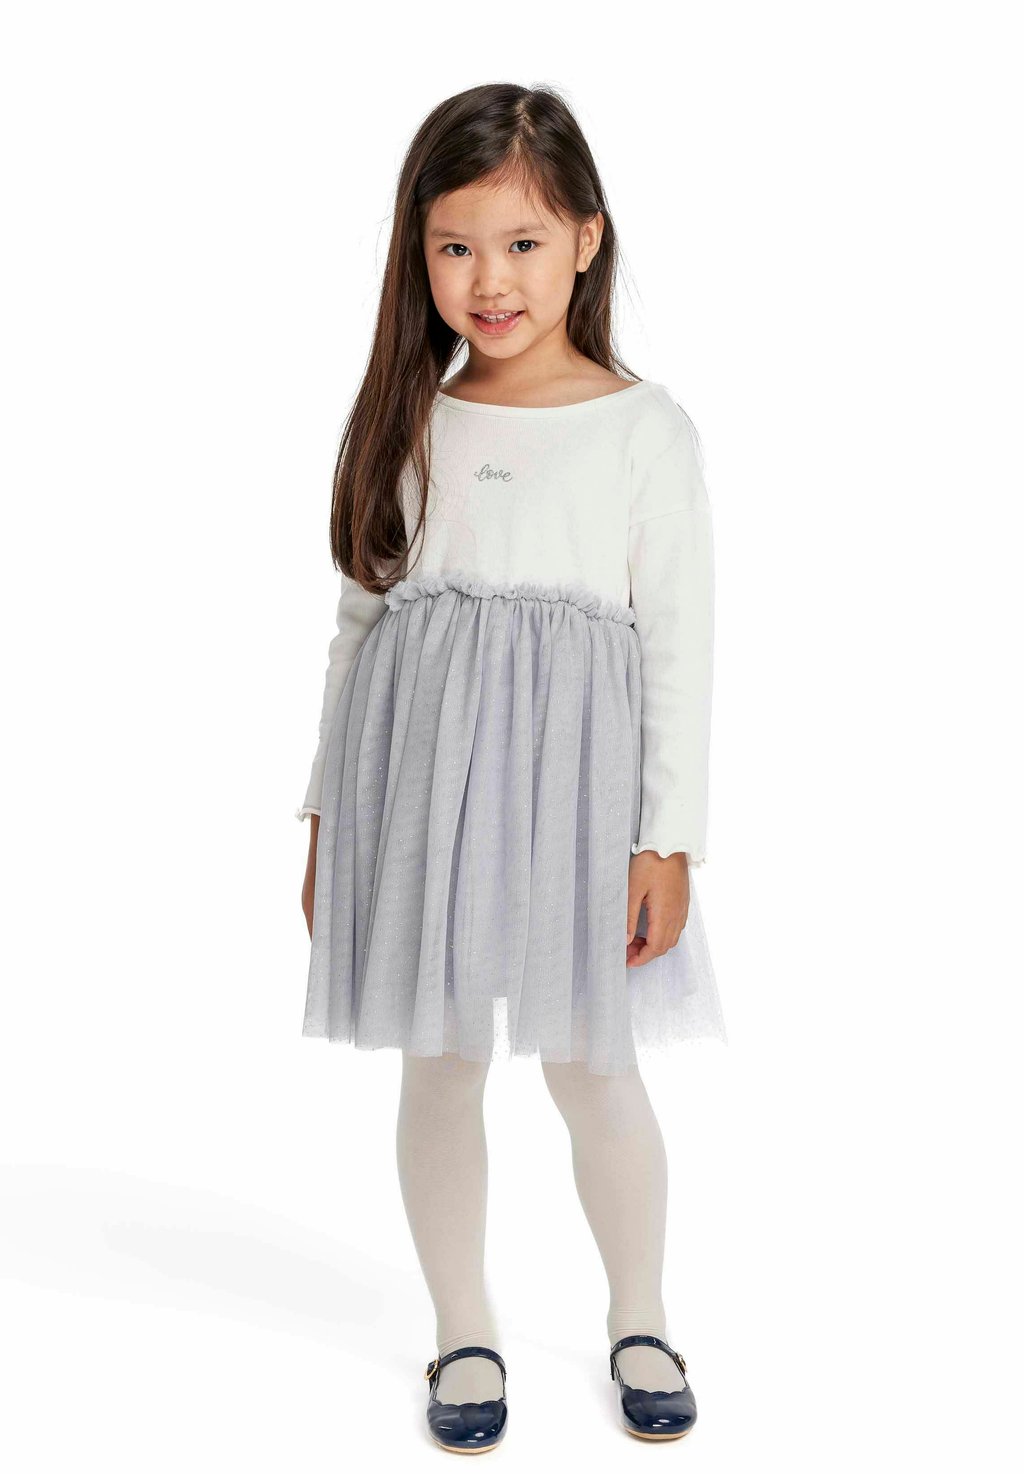 Элегантное платье Standard MINOTI, цвет off white grey